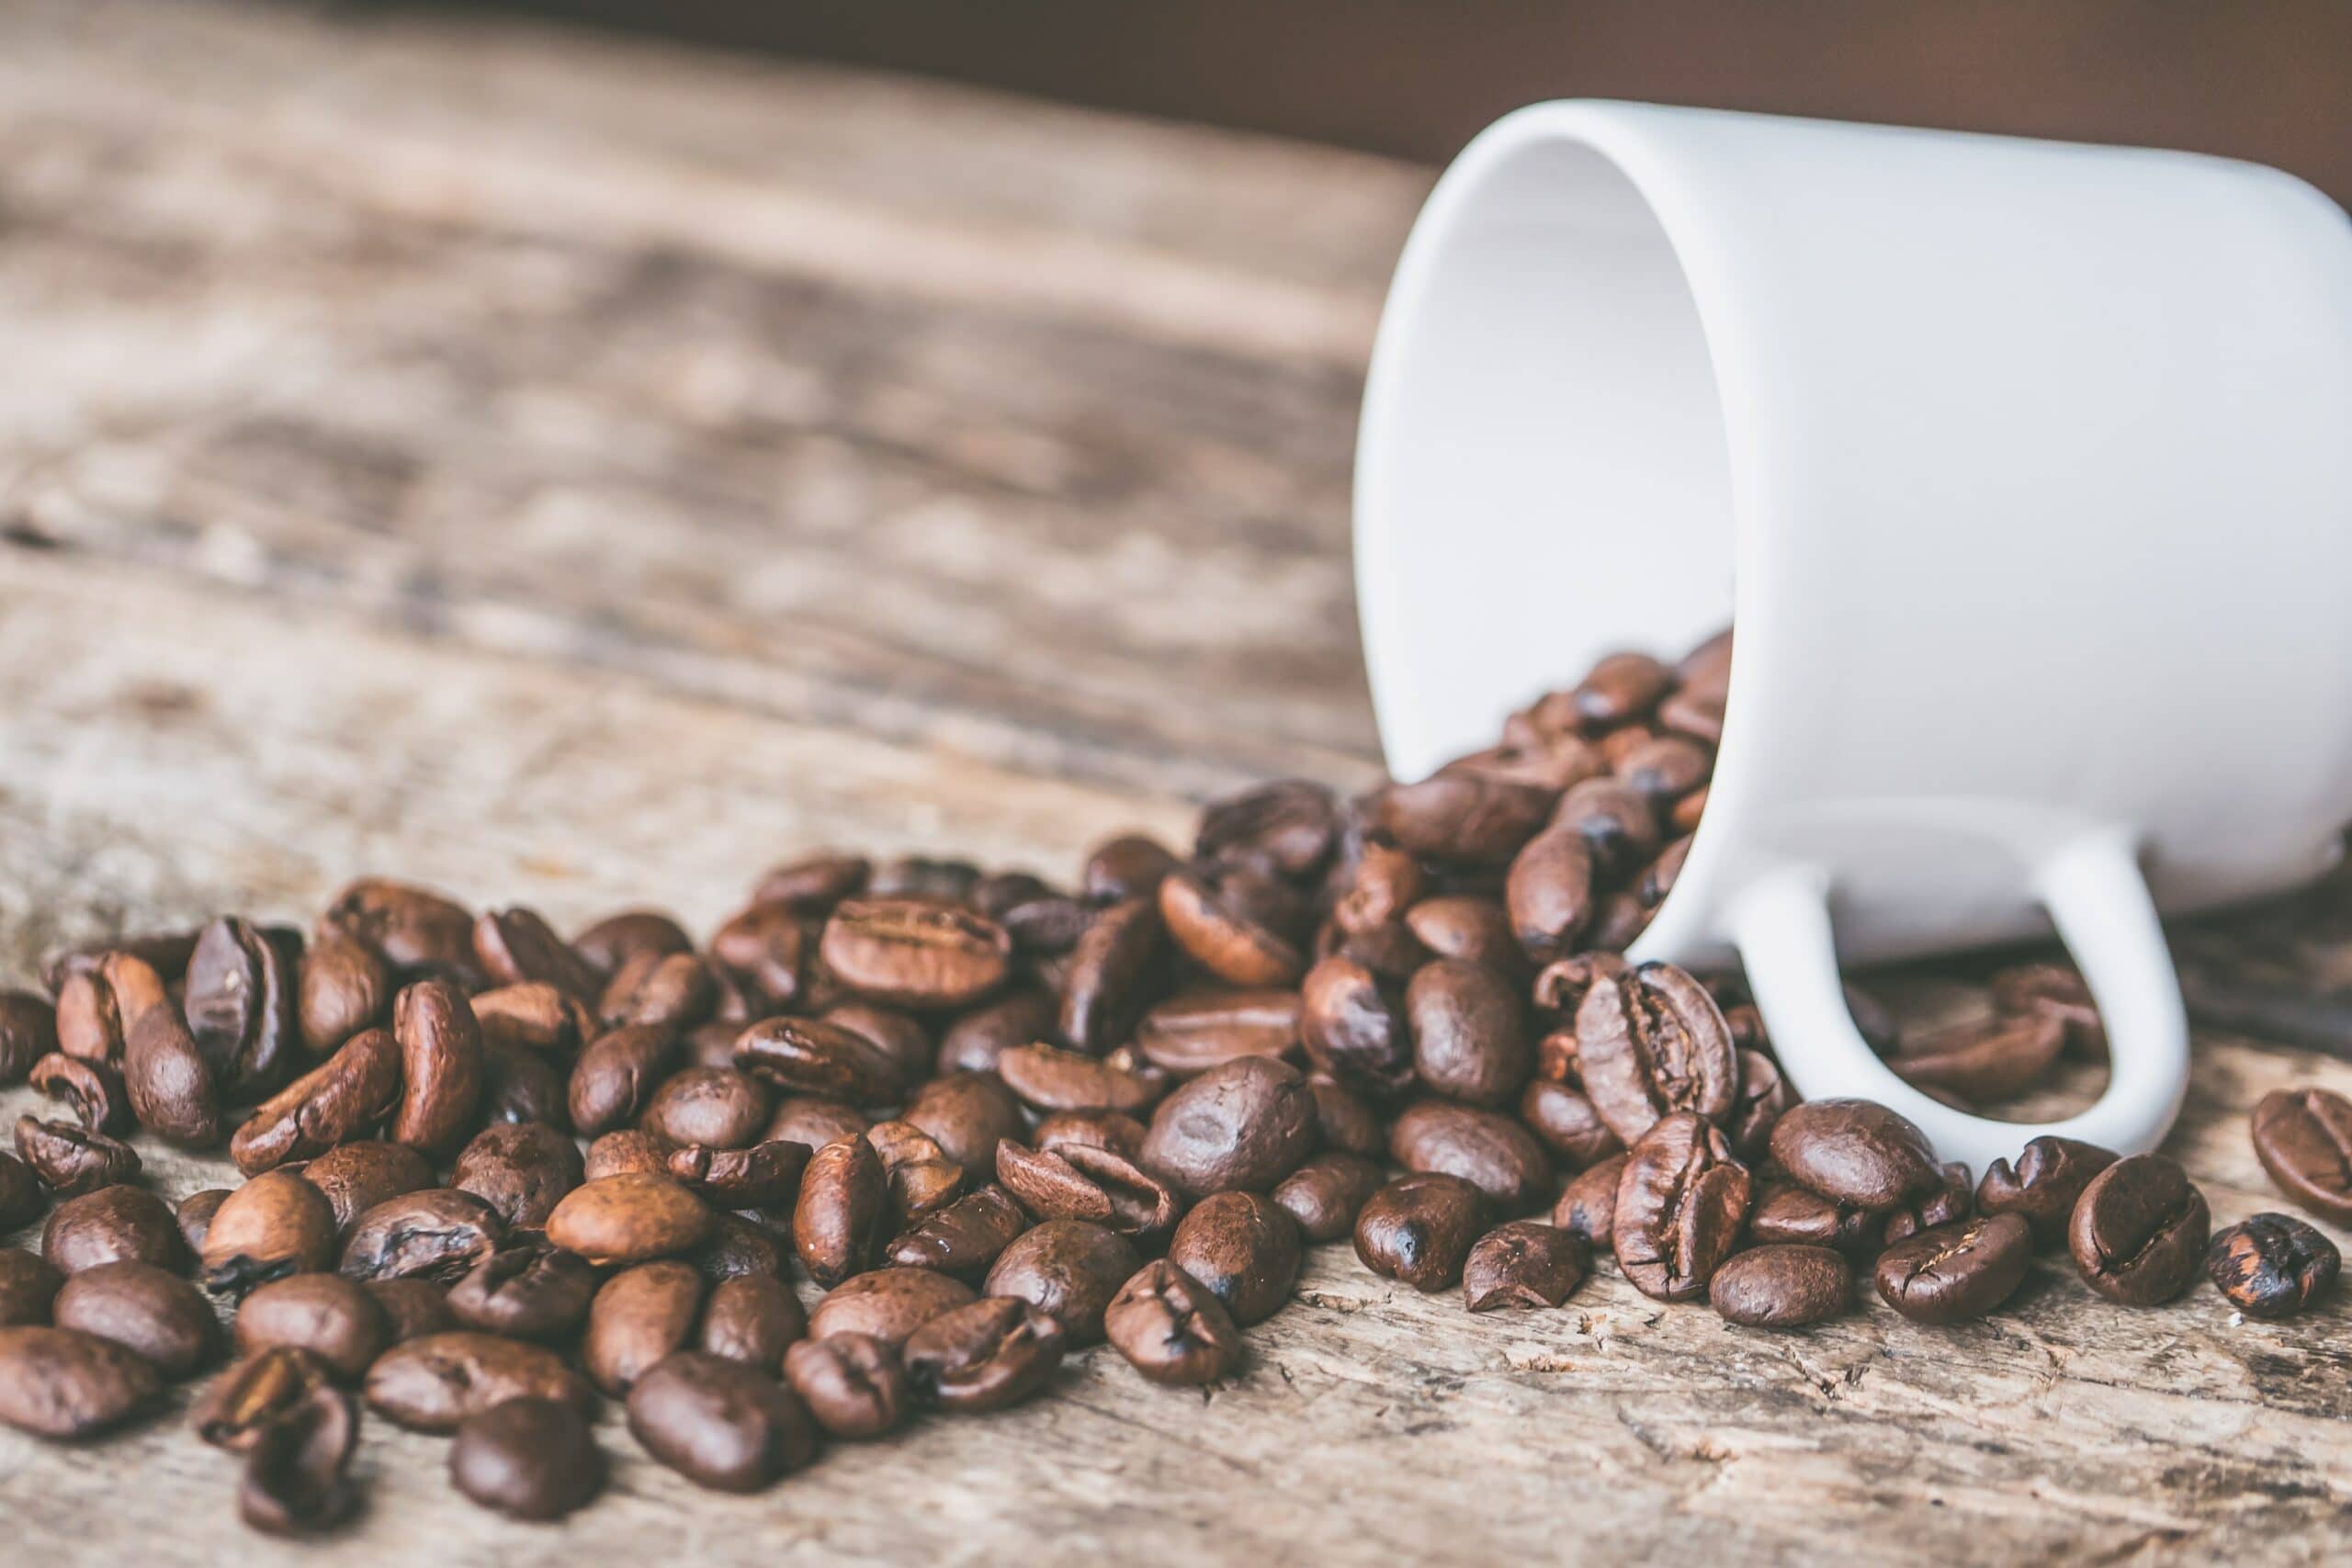 ☕ 5 beneficios del café Arábica